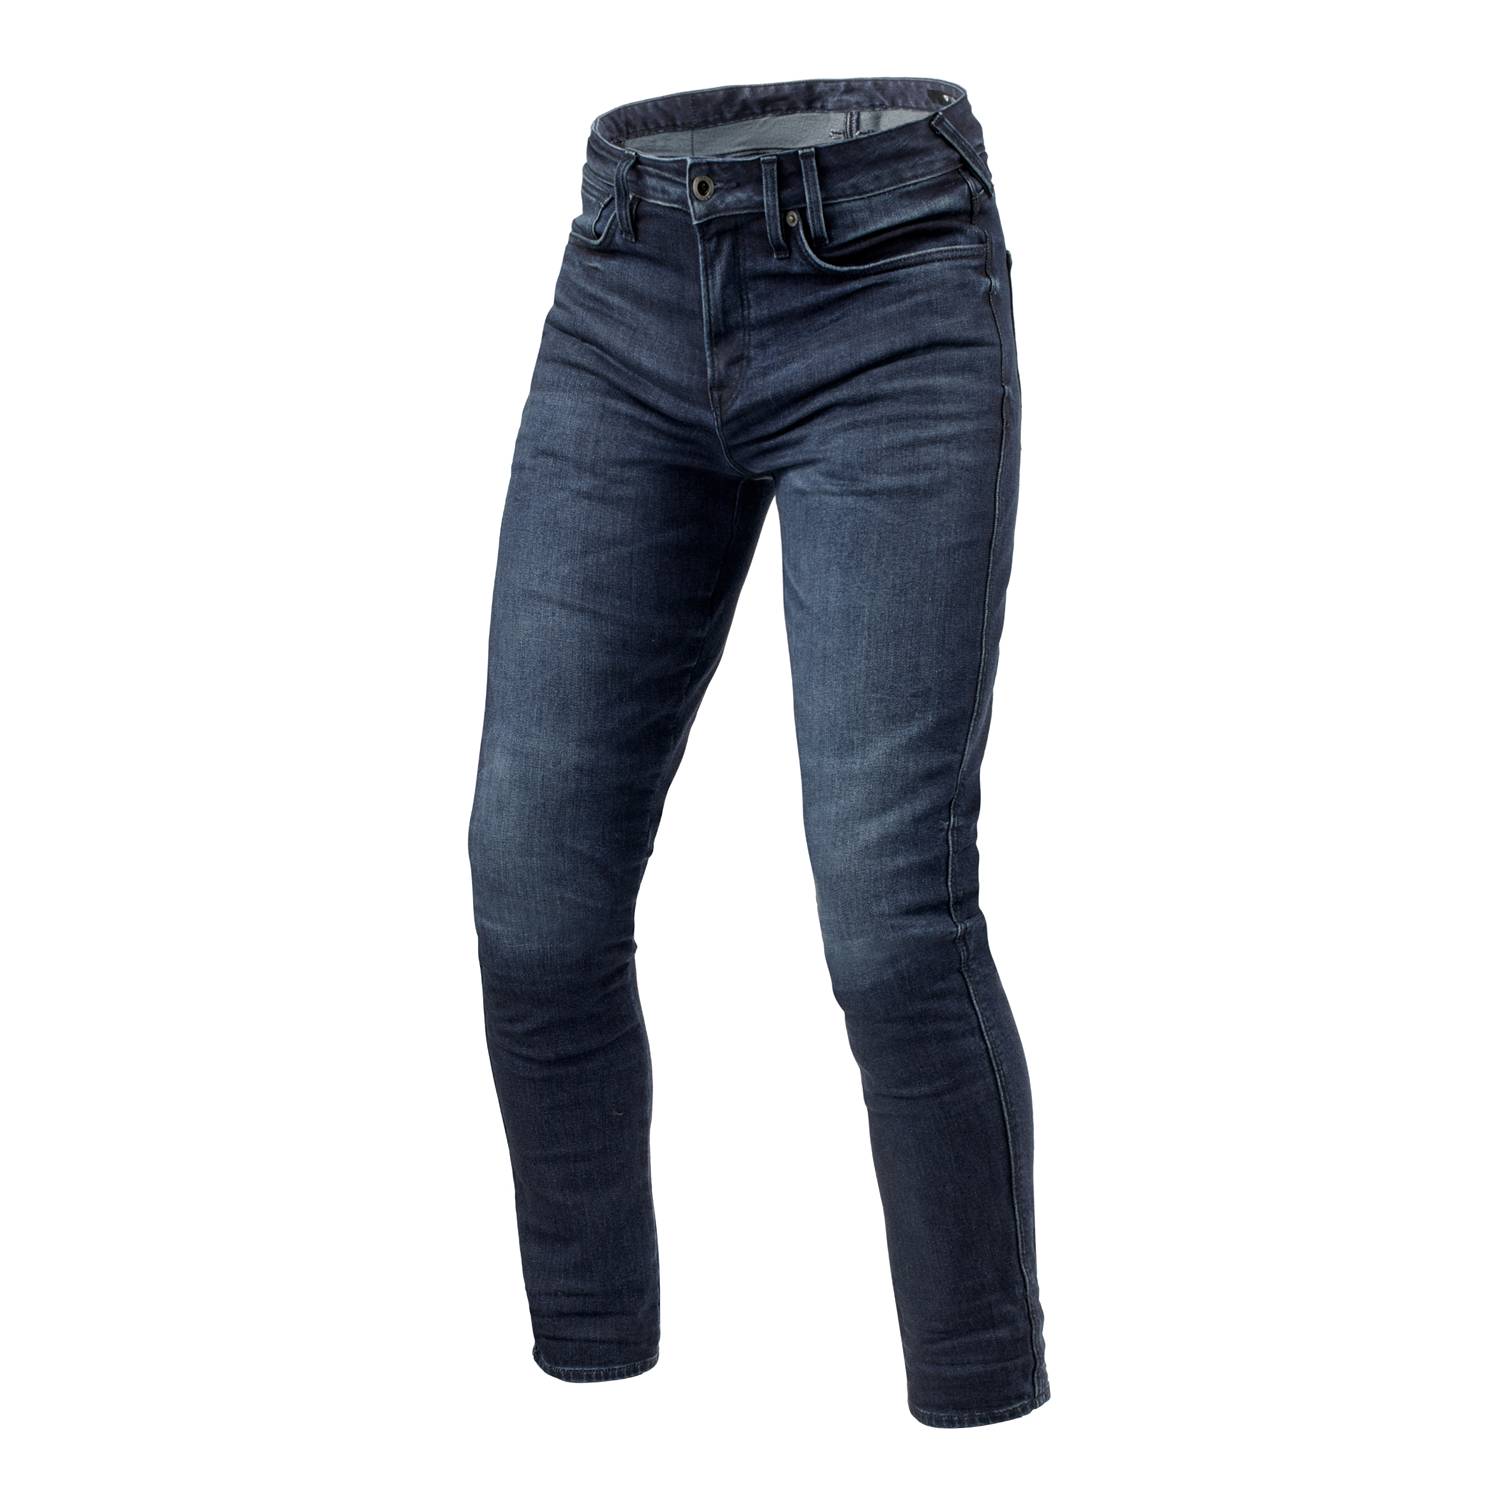 Image of REV'IT! Jeans Carlin SK Dark Blue Used L34 Motorcycle Jeans Size L34/W28 EN